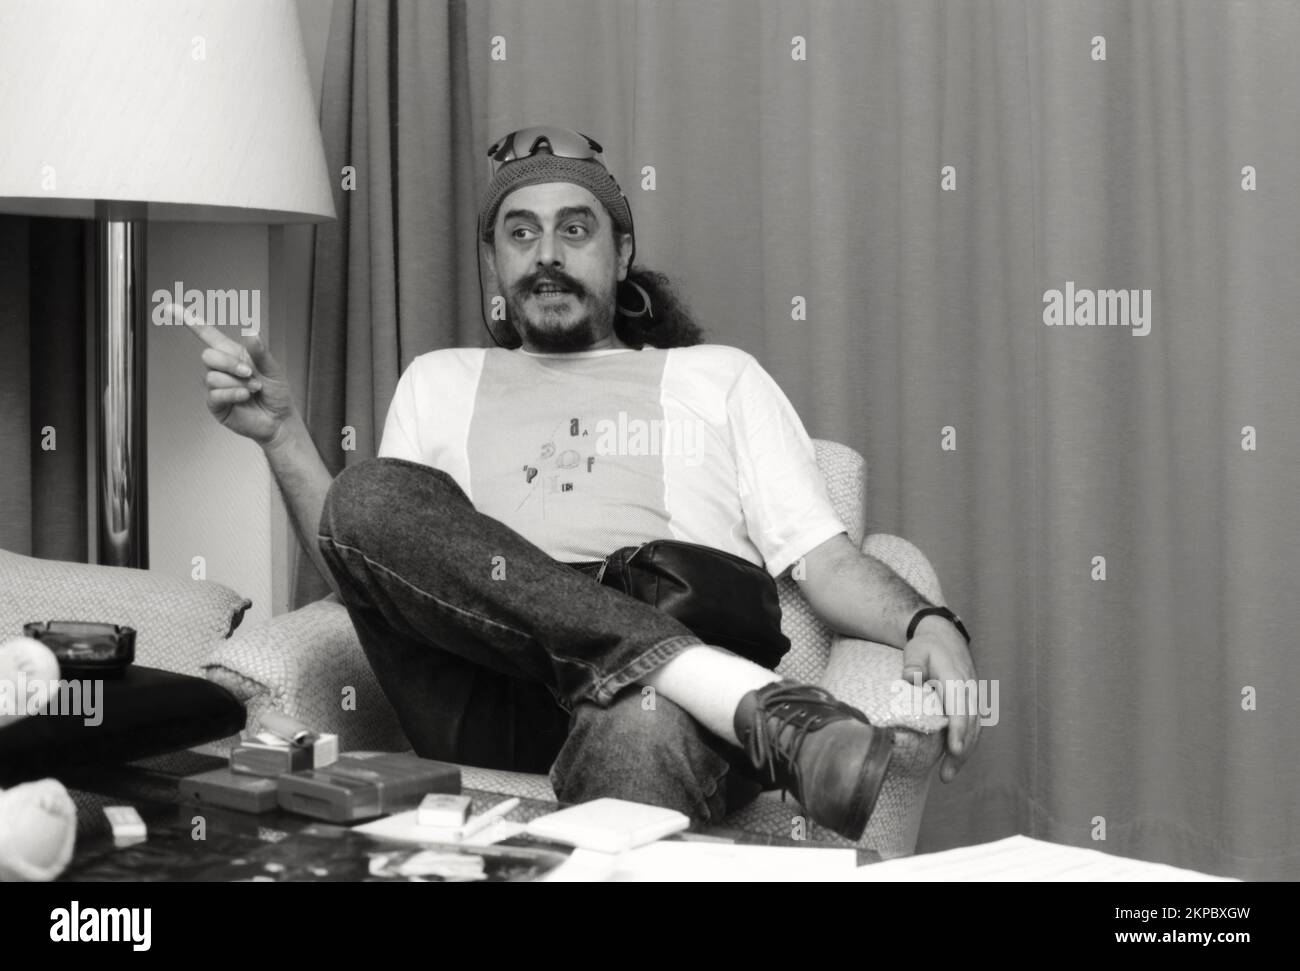 Egberto Gismonti, compositeur brésilien, guitariste et pianiste, interview, Cologne, 1993 Banque D'Images